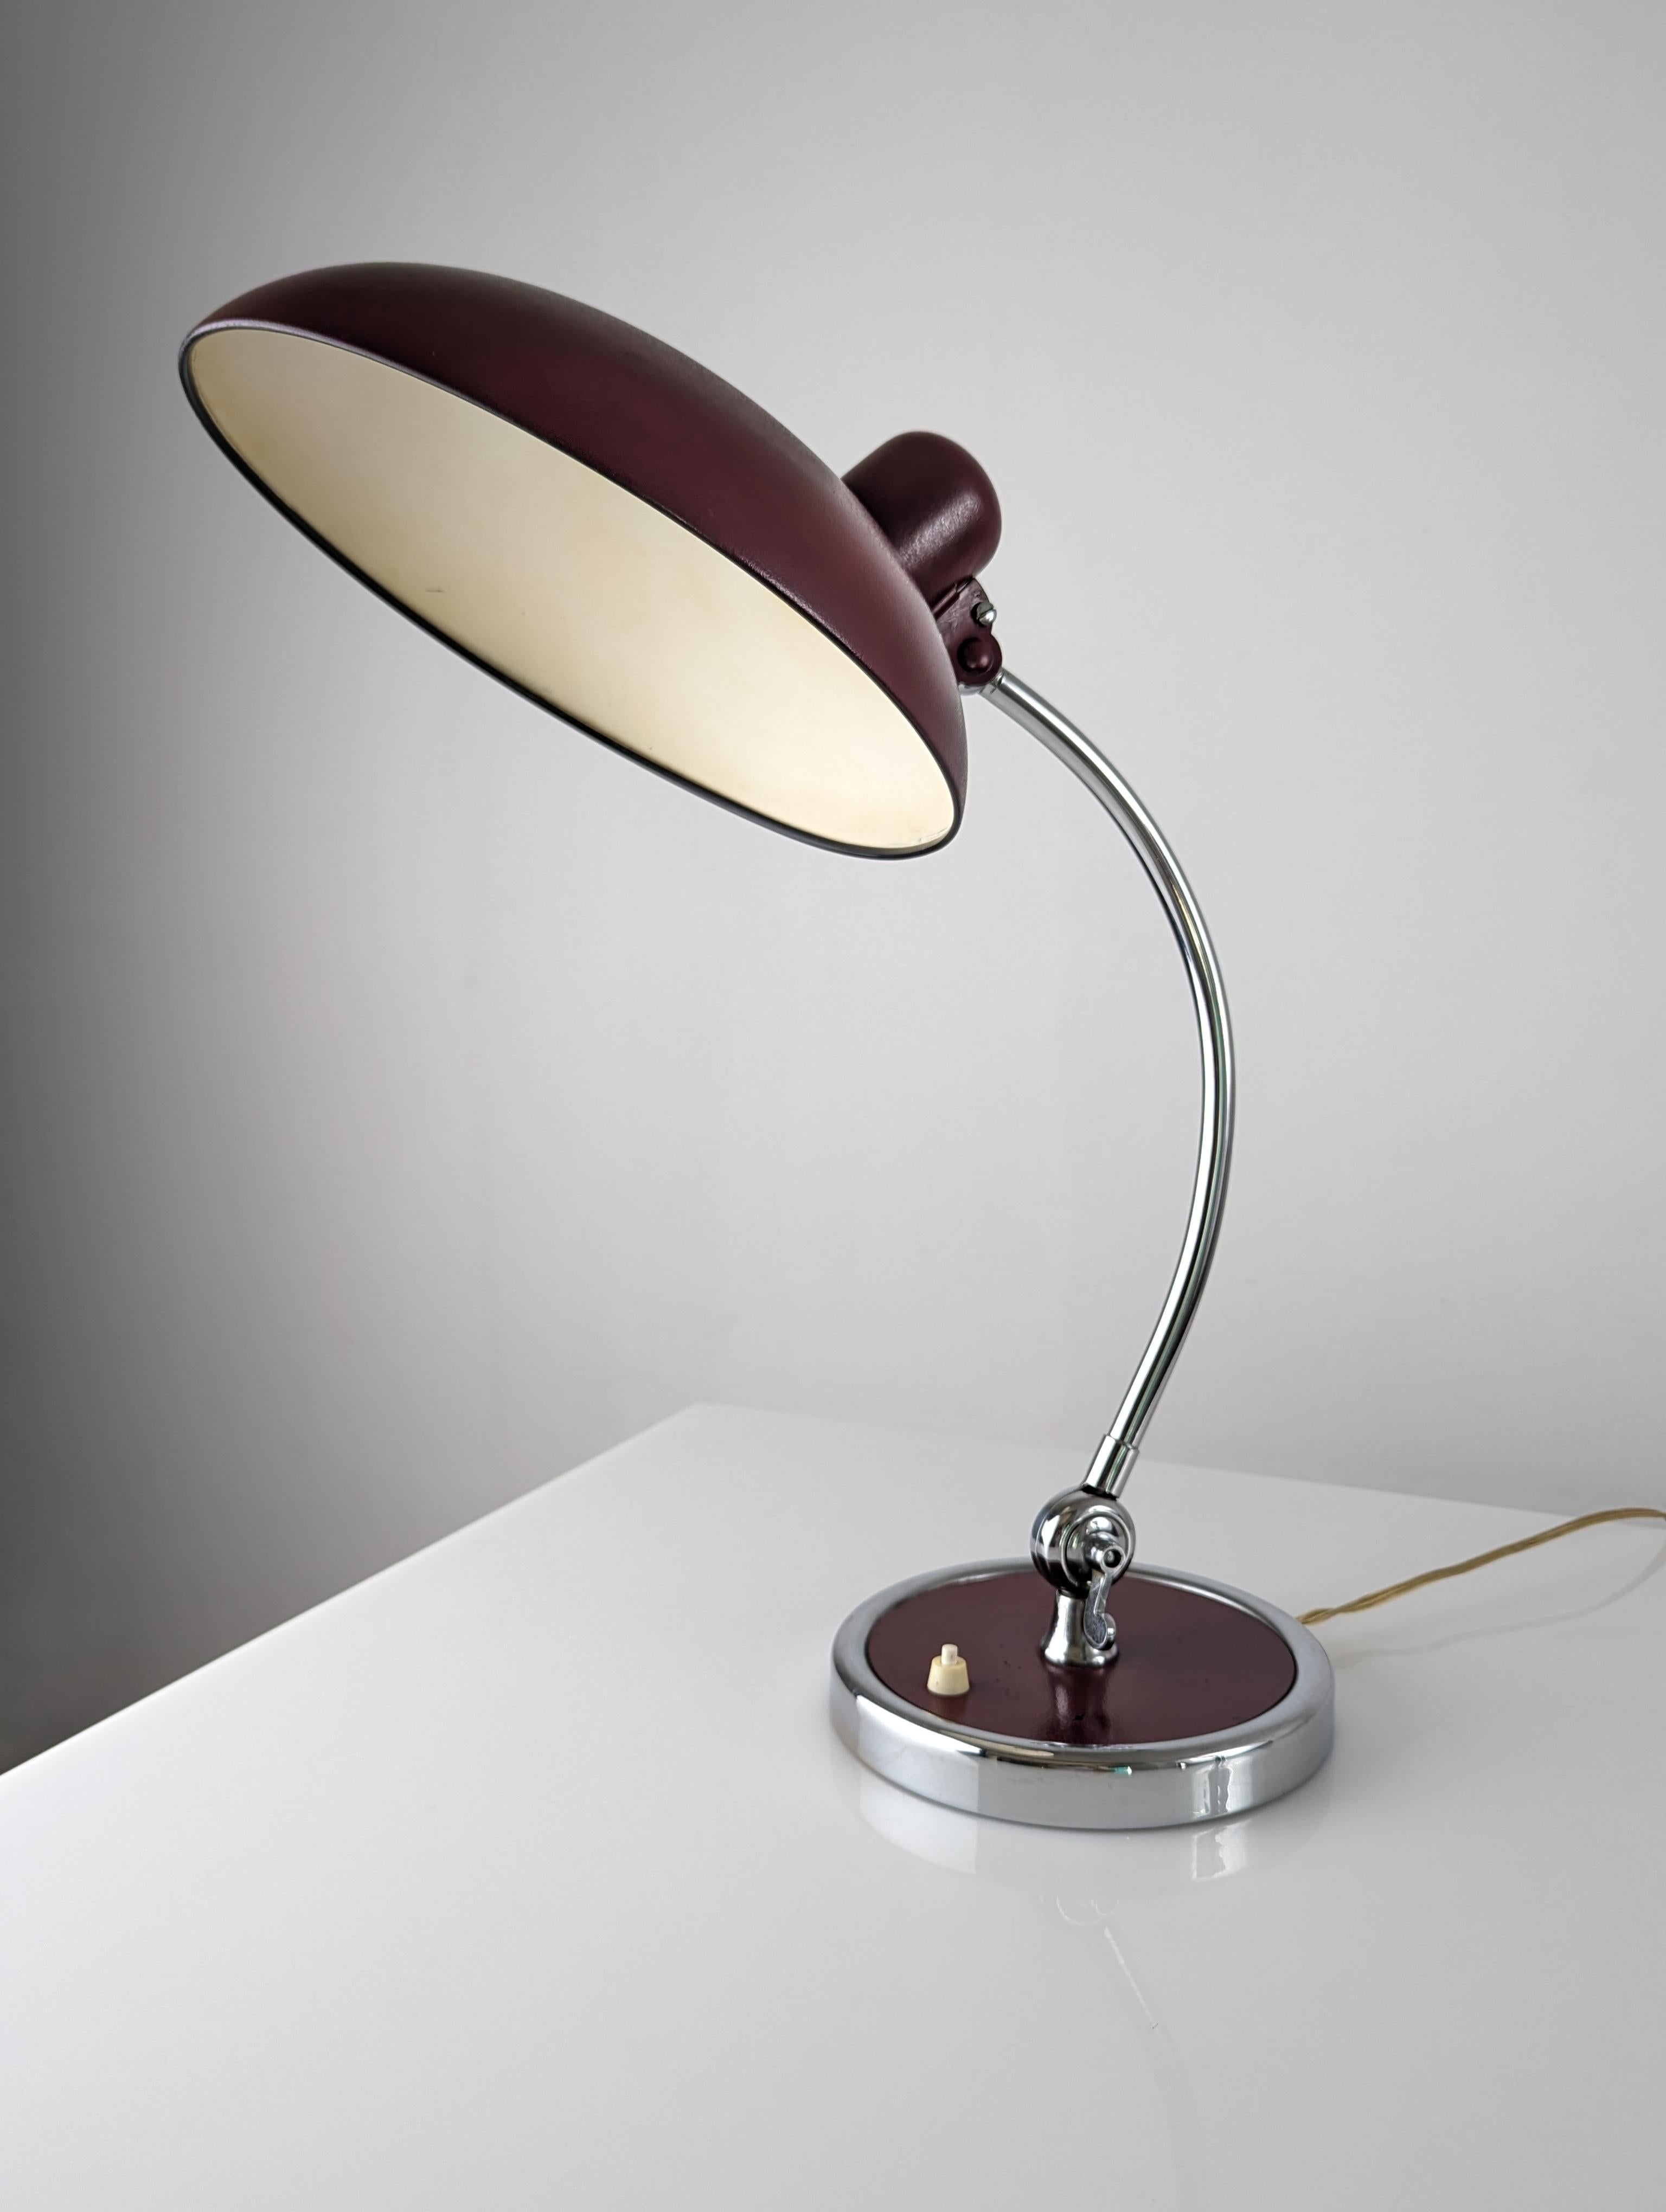 Wunderschöne Schreibtischlampe von Christian Dell in einem eleganten und exklusiven Burgunderrot und Chromfarbe.